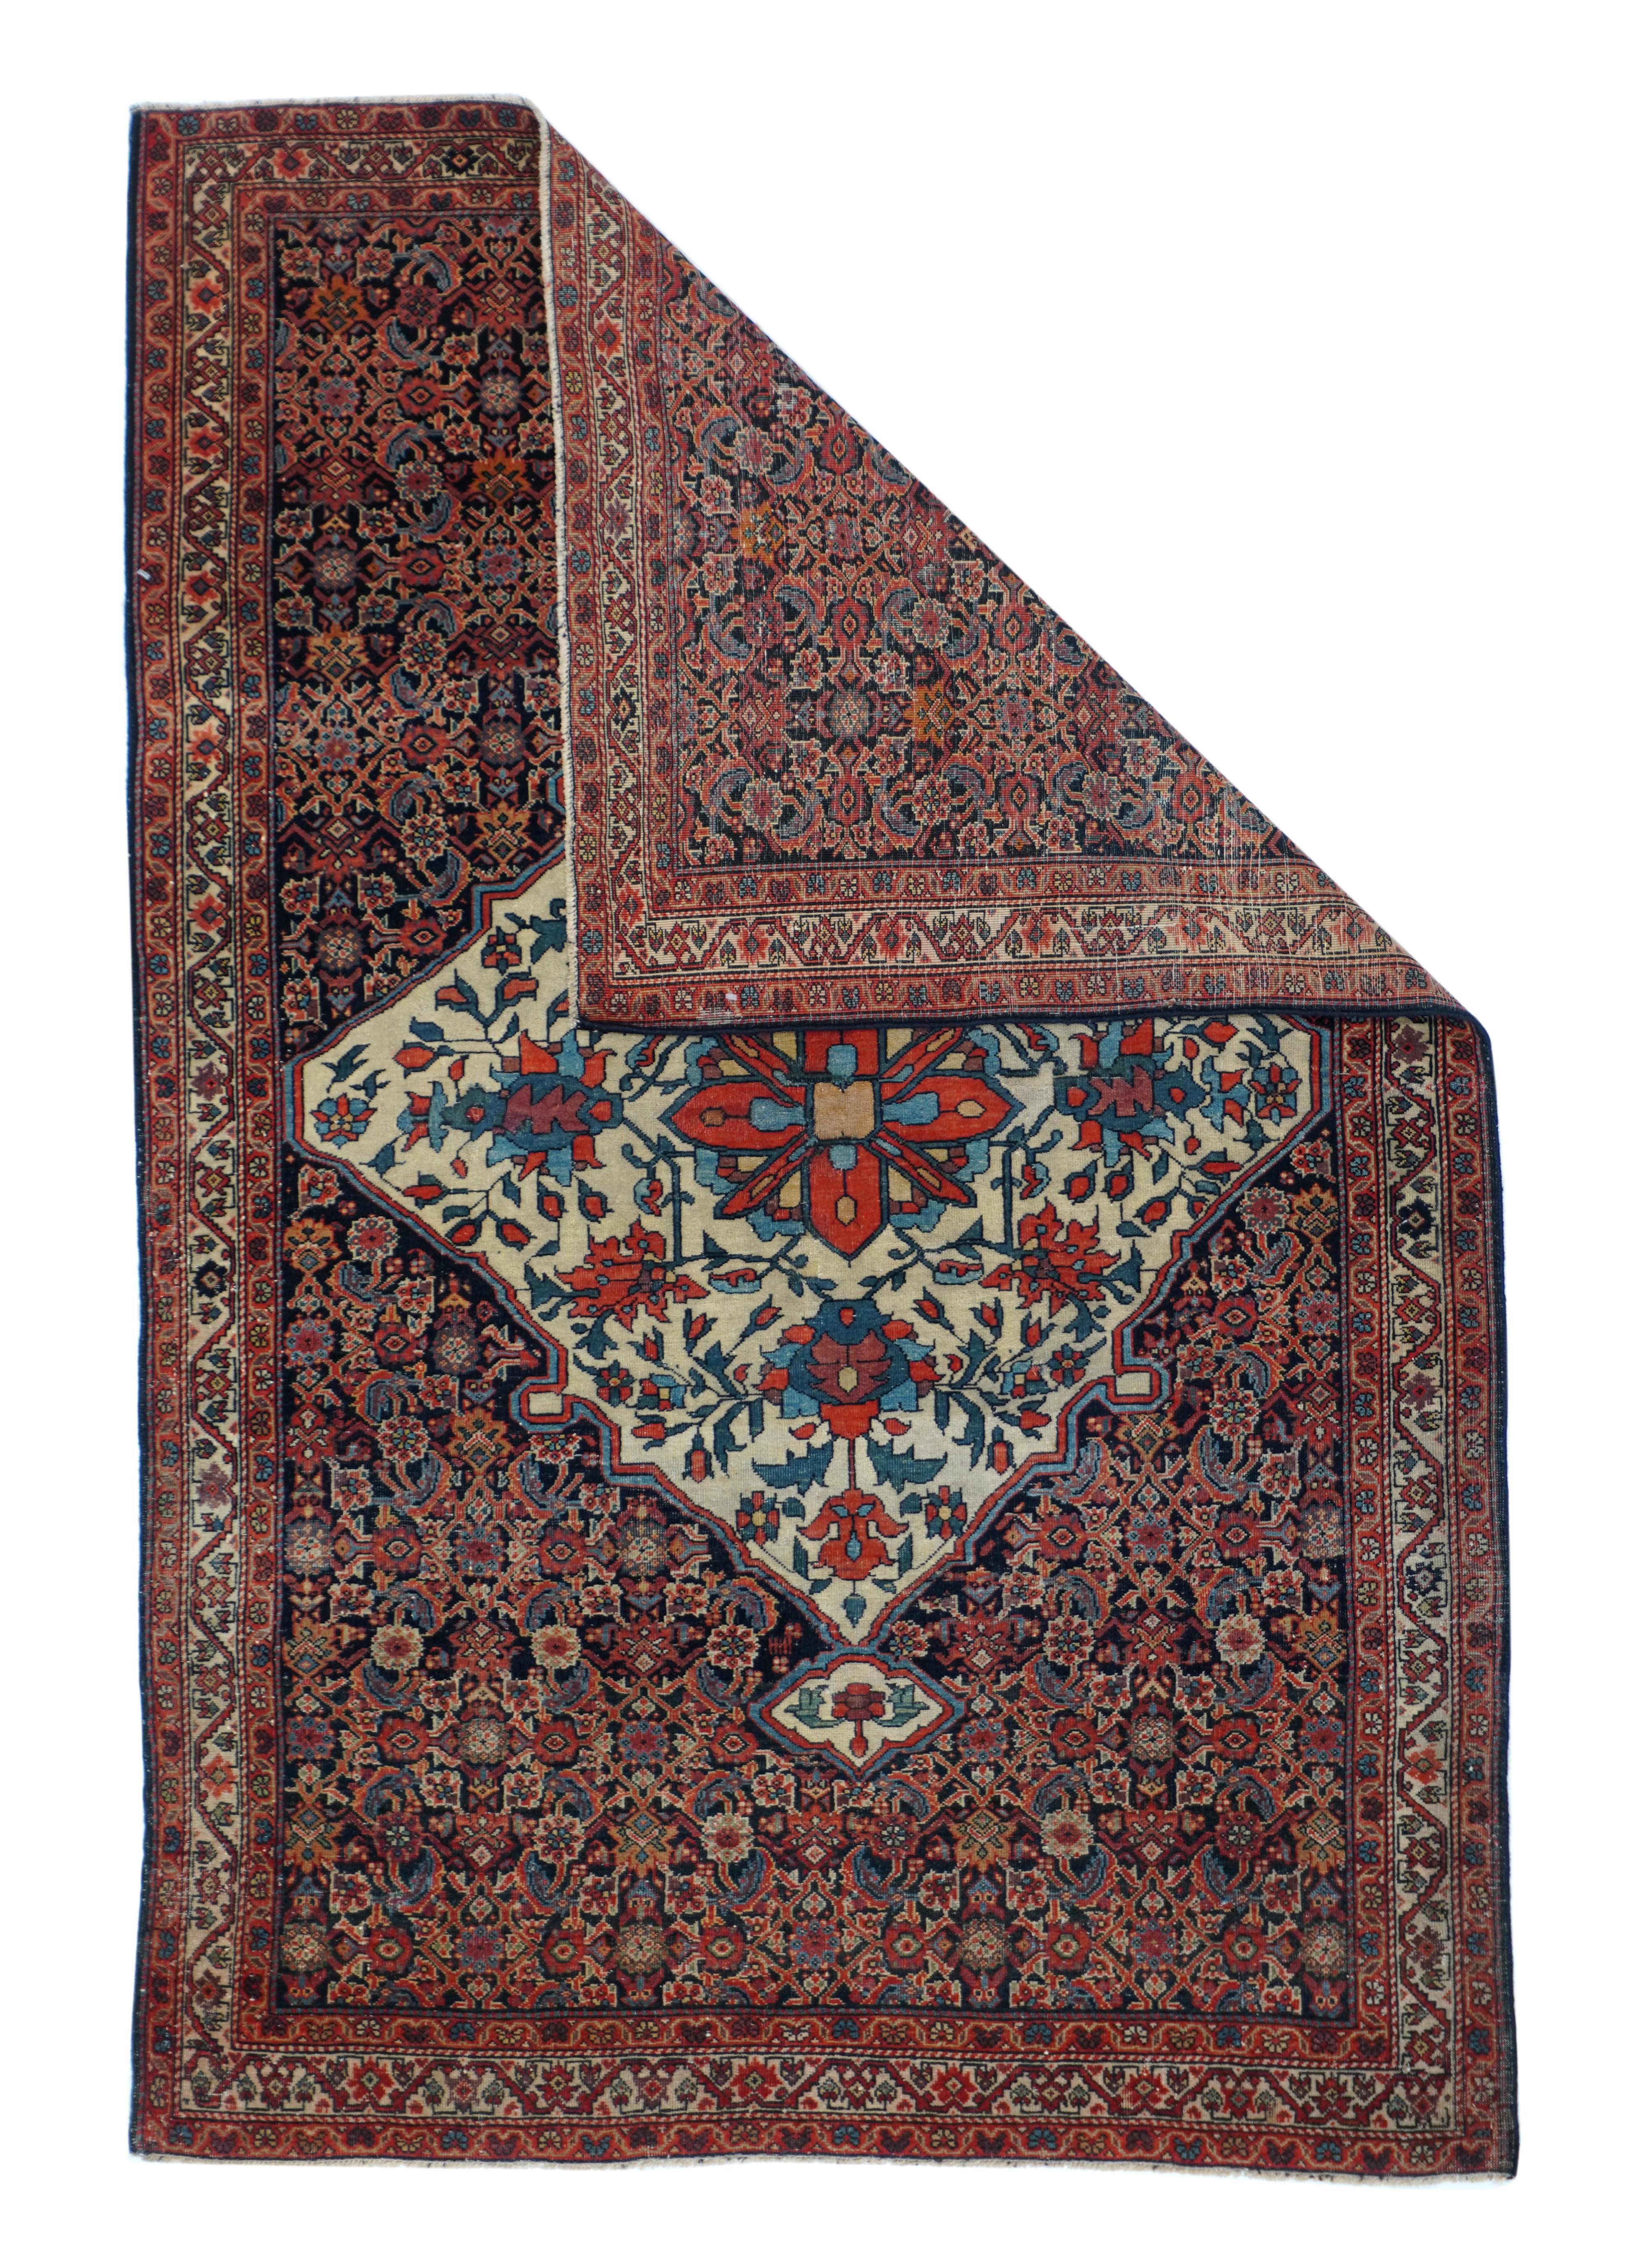 Antique Farahan Sarouk rug 3'2'' x 4'8''.